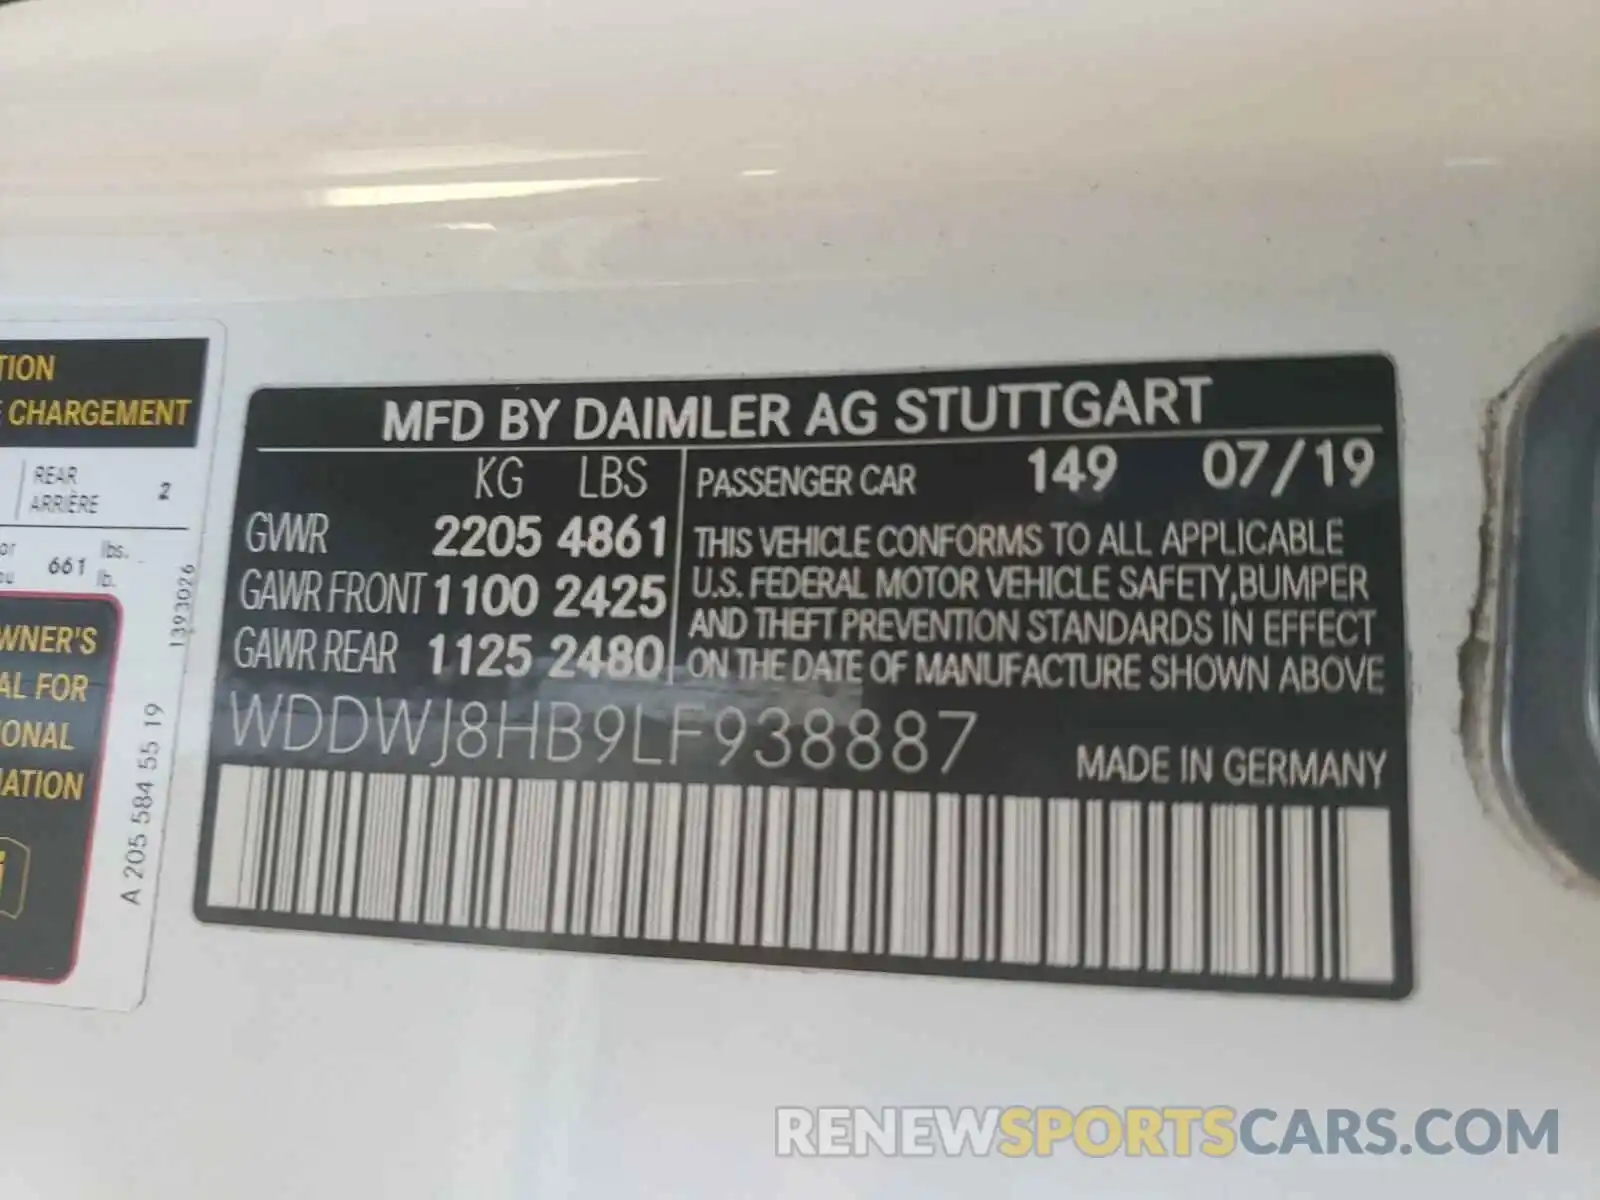 10 Photograph of a damaged car WDDWJ8HB9LF938887 MERCEDES-BENZ AMG 2020